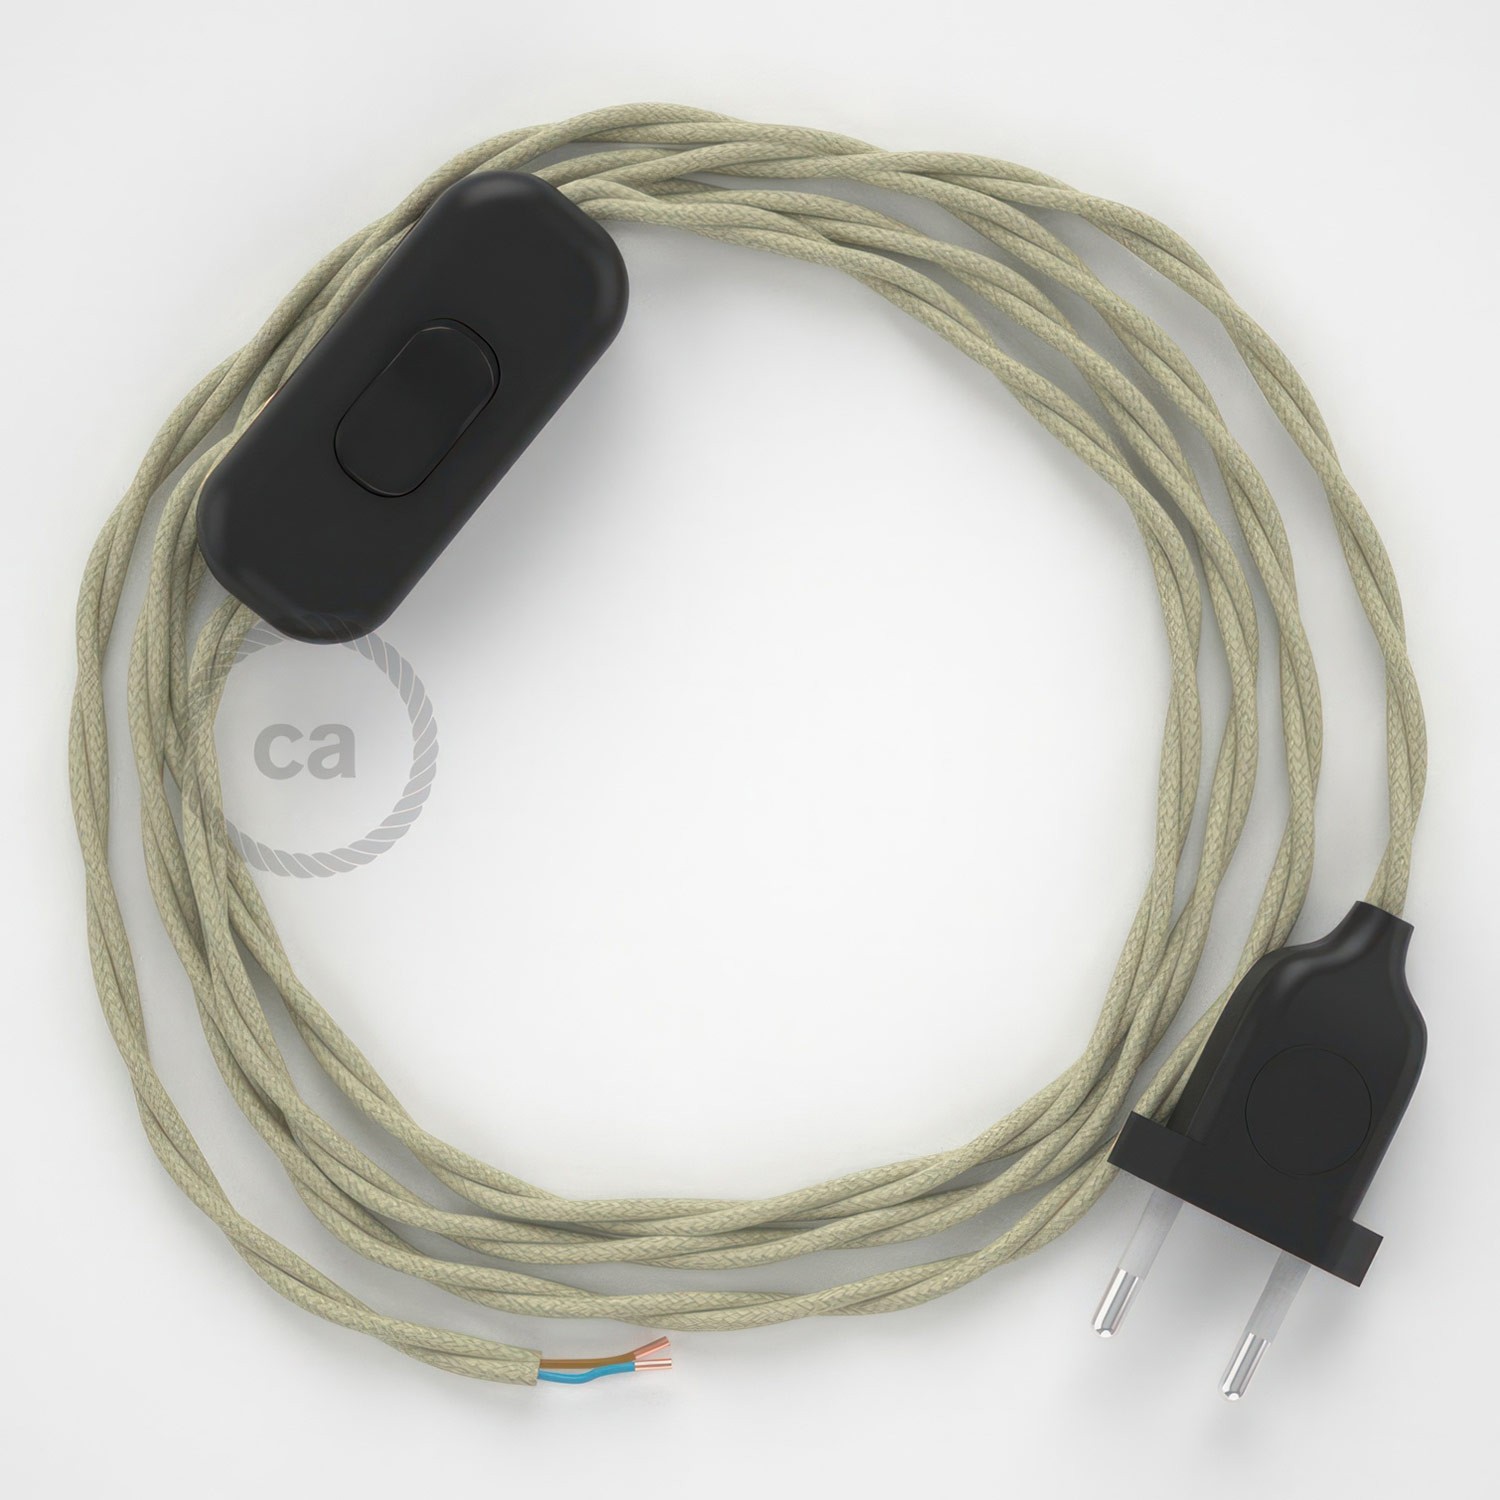 Cableado para lámpara, cable TC43 Algodón Gris Pardo 1,8m. Elige tu el color de la clavija y del interruptor!